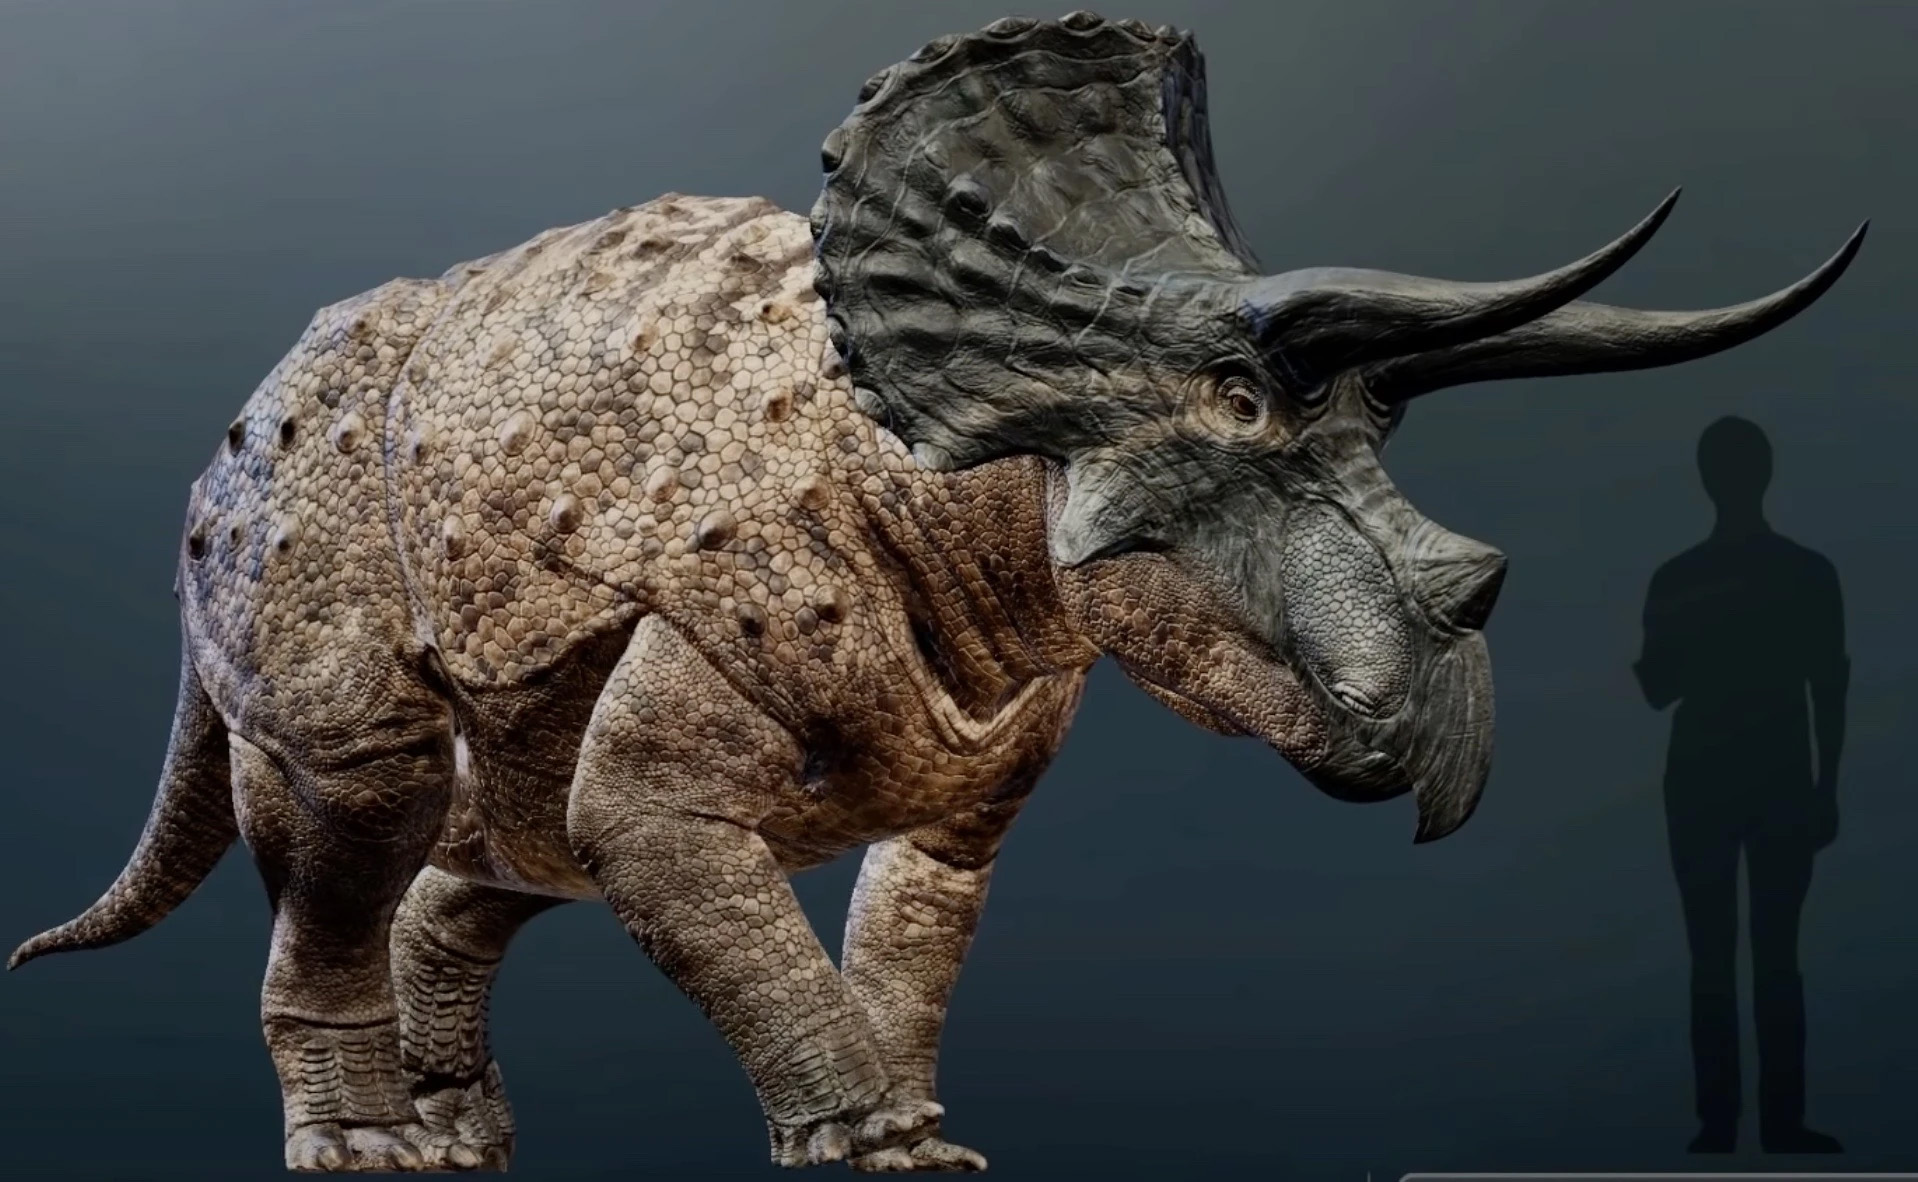 40 interessante Fakten über Triceratops ᐈ MillionenFakten